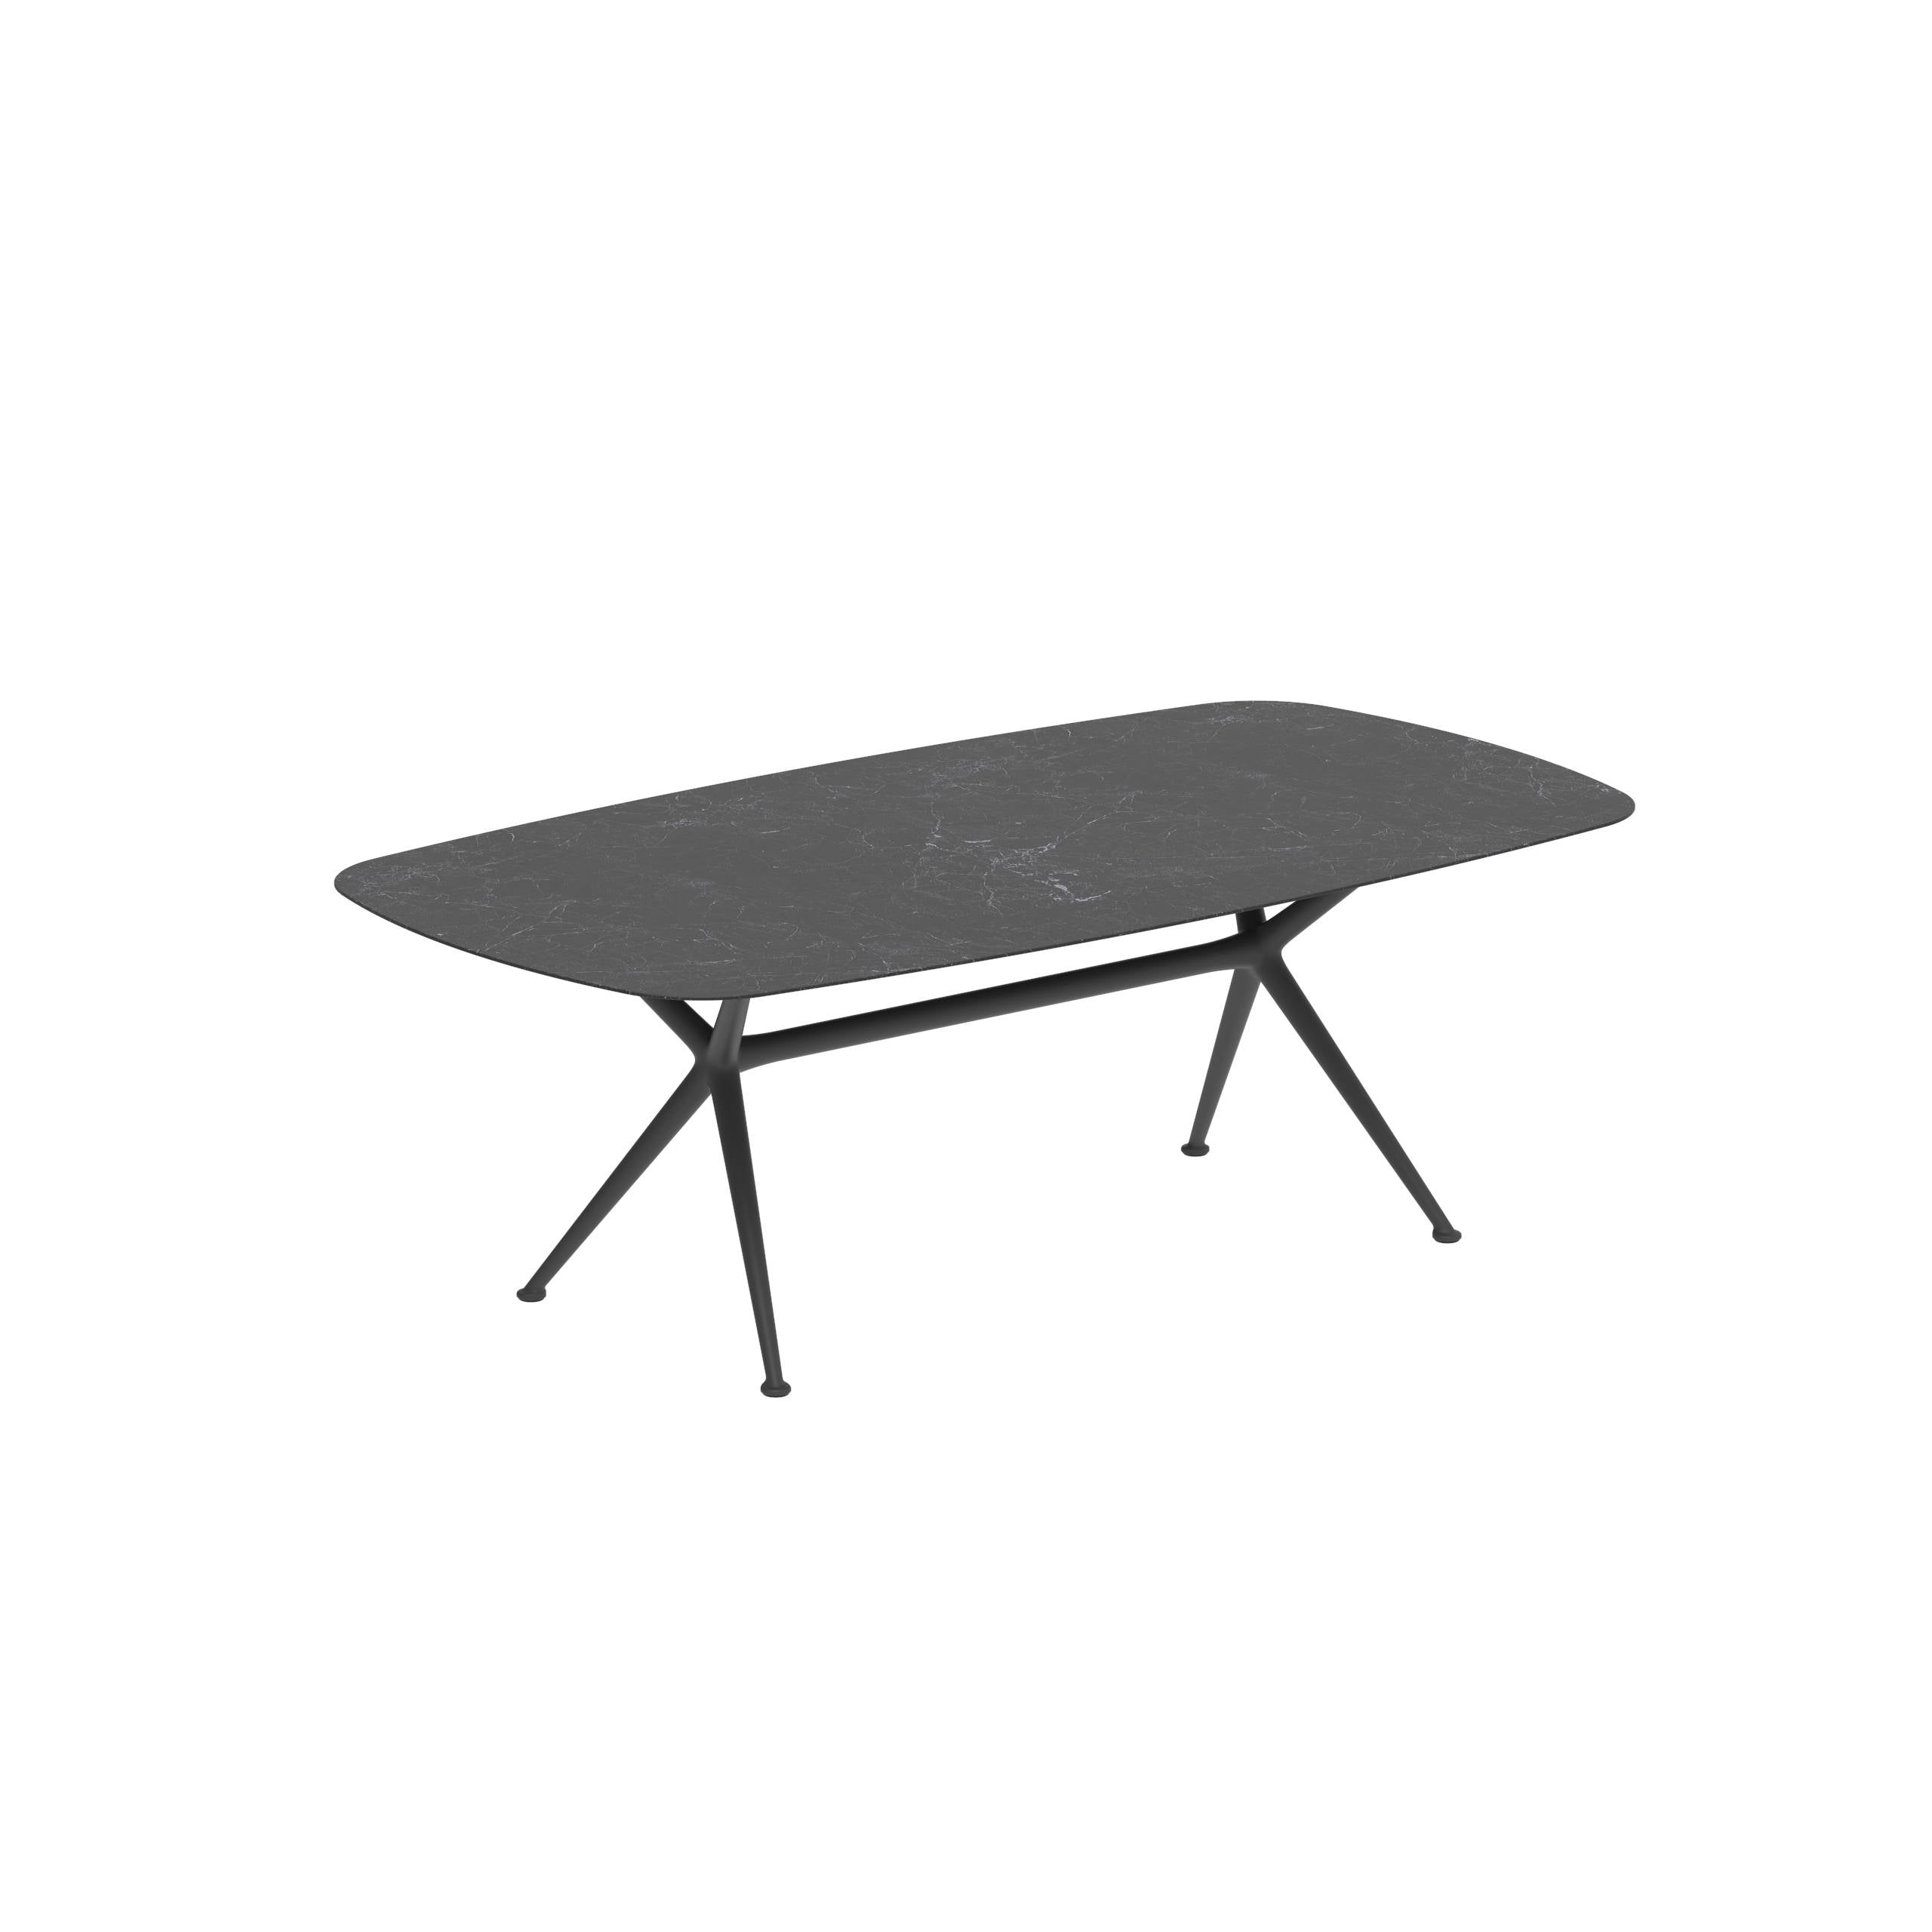 Exes Table 220x120cm Alu Legs Anthracite - Table Top Ceramic Nero Marquina